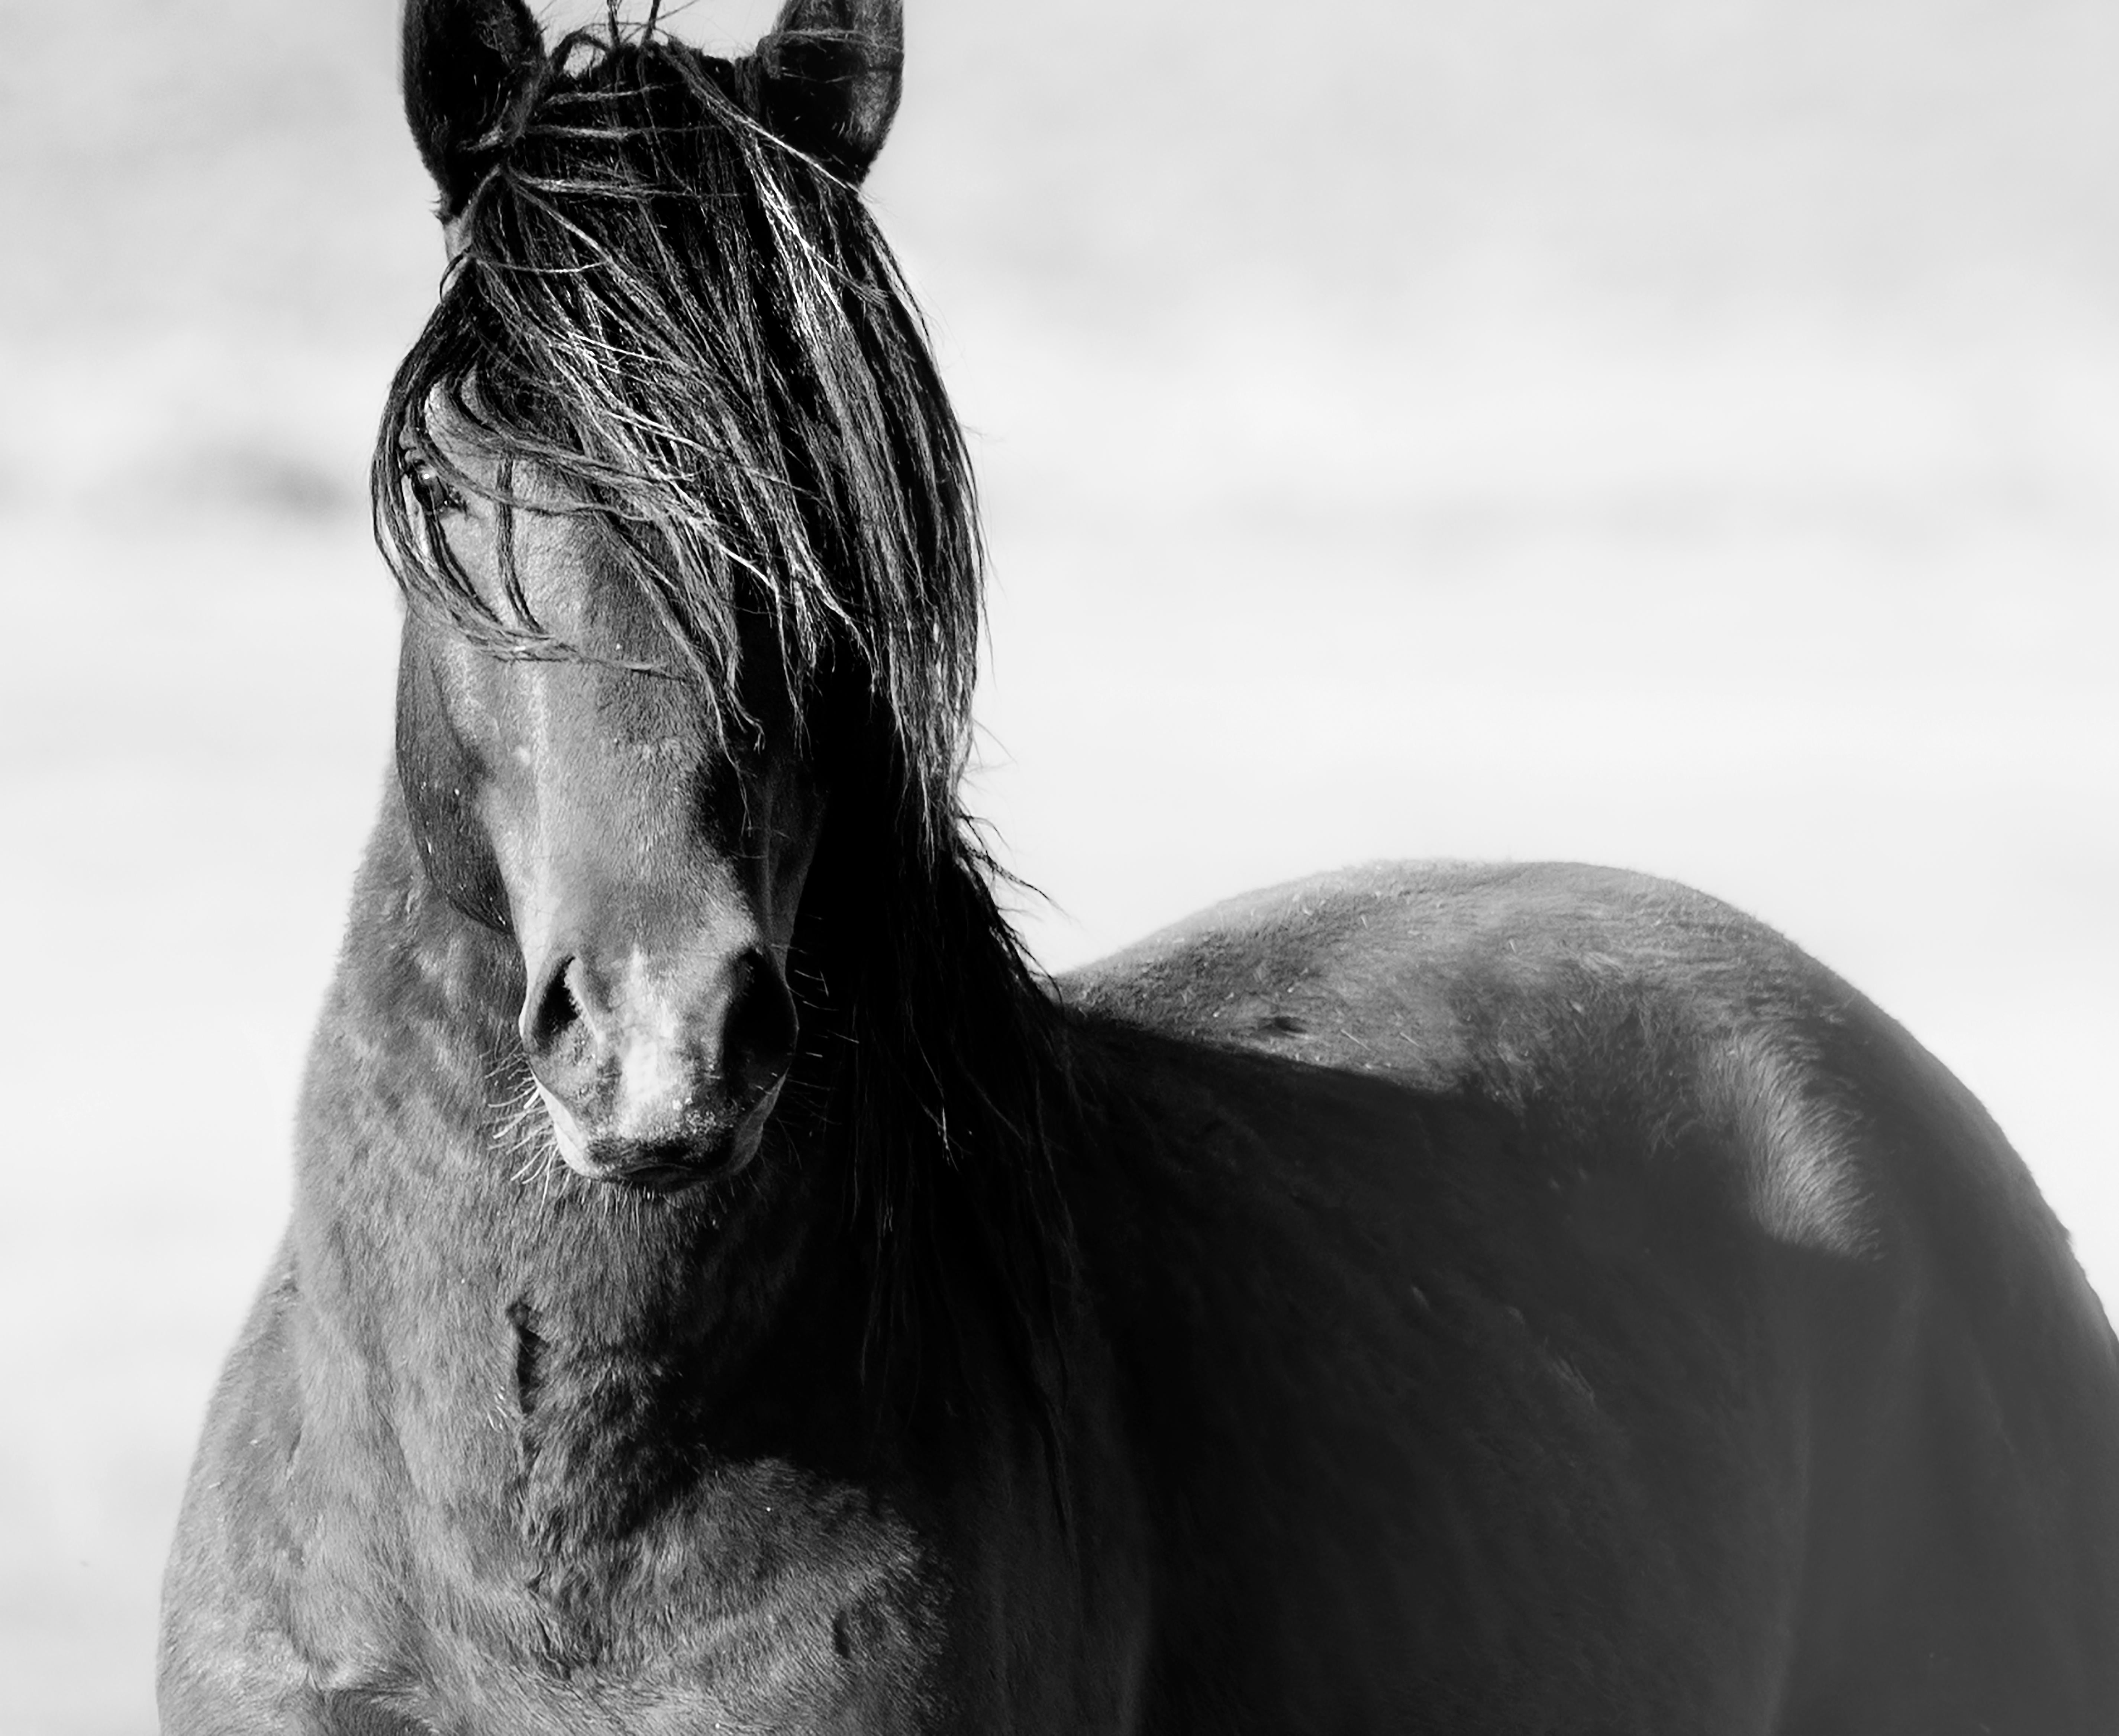 Black and White Photograph Shane Russeck - "Wild" 36x48 Photographie en noir et blanc d'un cheval sauvage Mustang Fine Art non signé